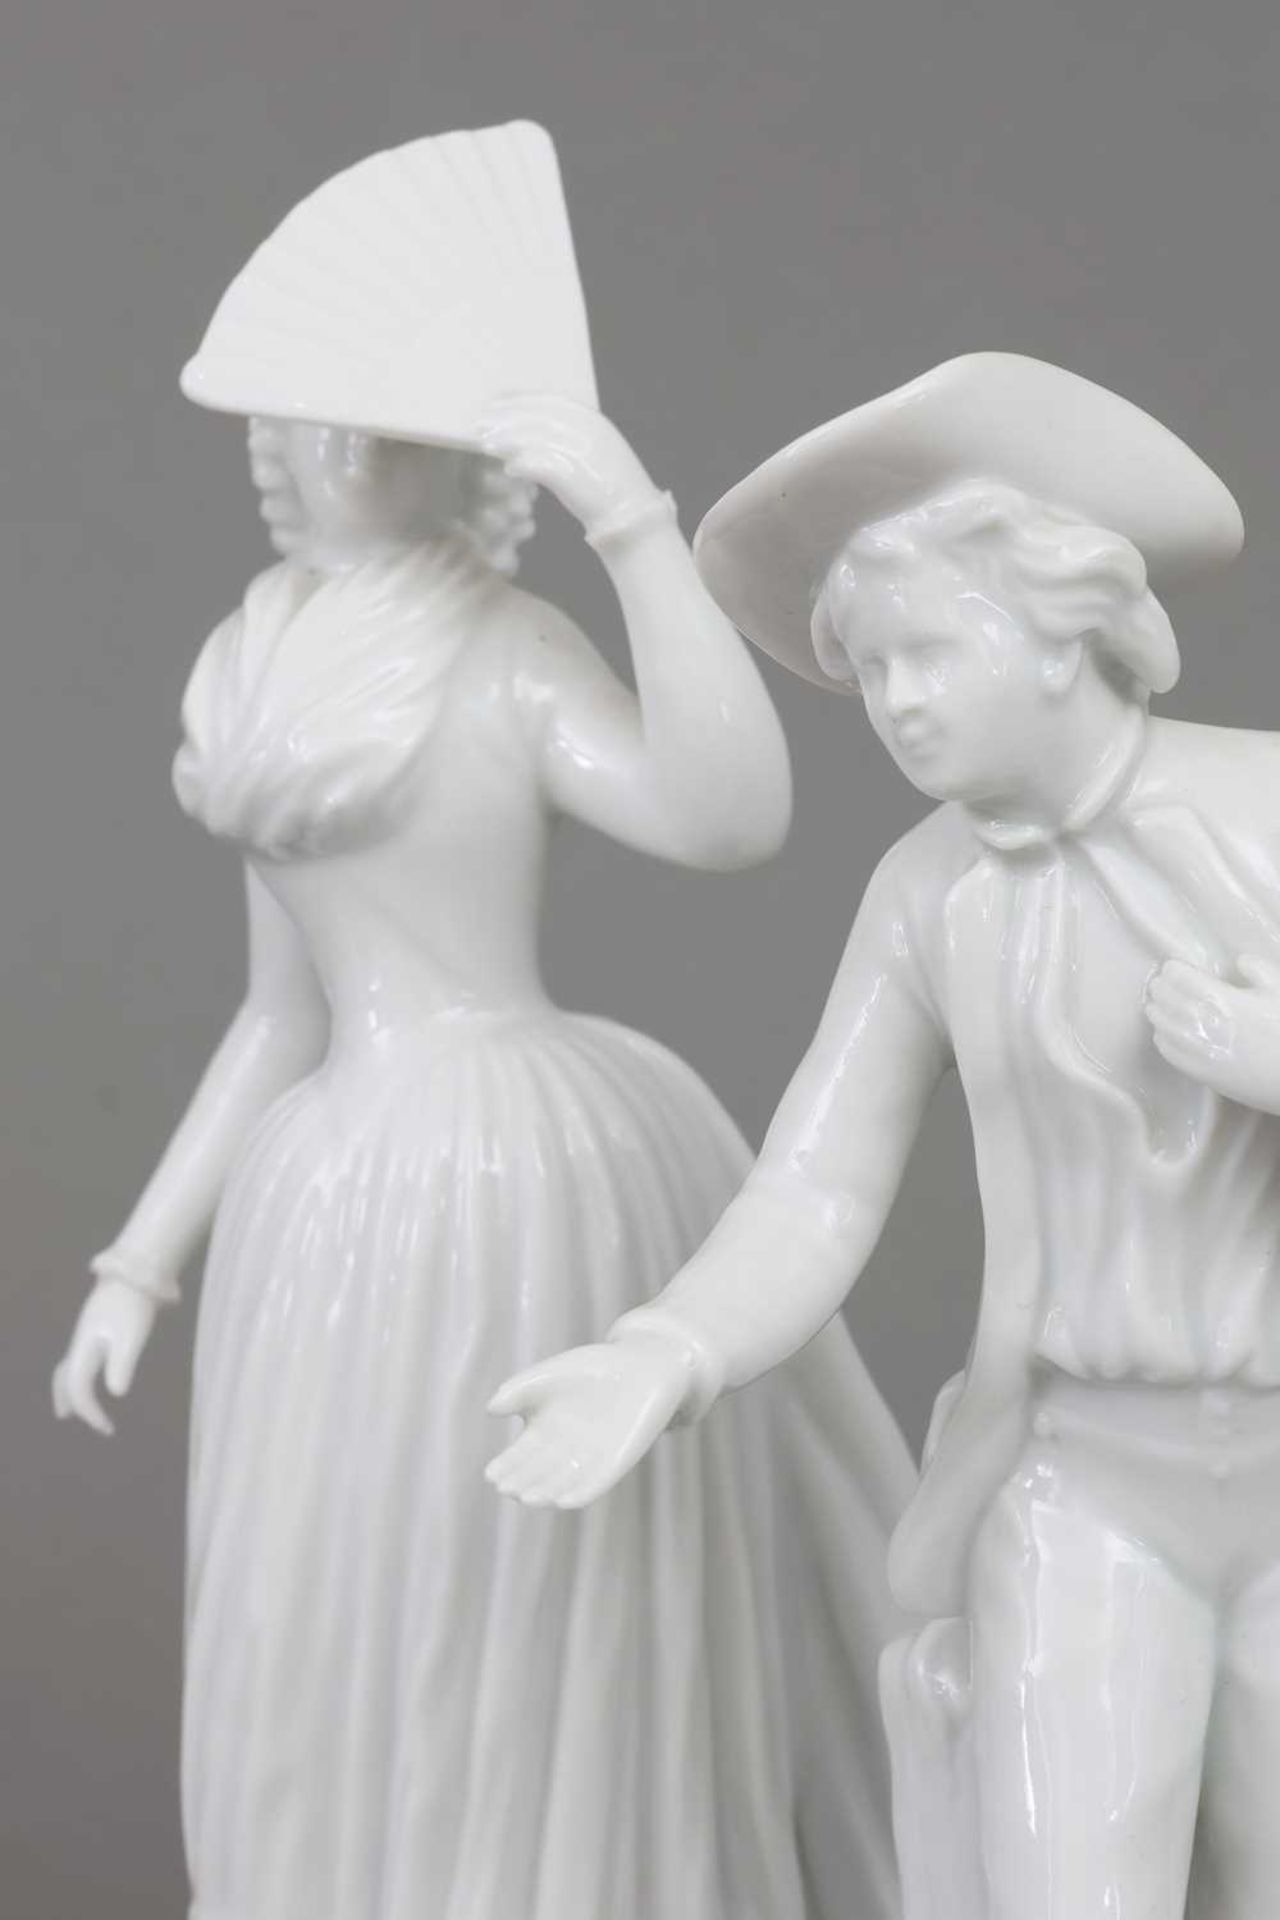 Paar ROYAL COPENHAGEN Porzellanfiguren "Dame mit Fächer" und "Kavalier" - Image 3 of 4